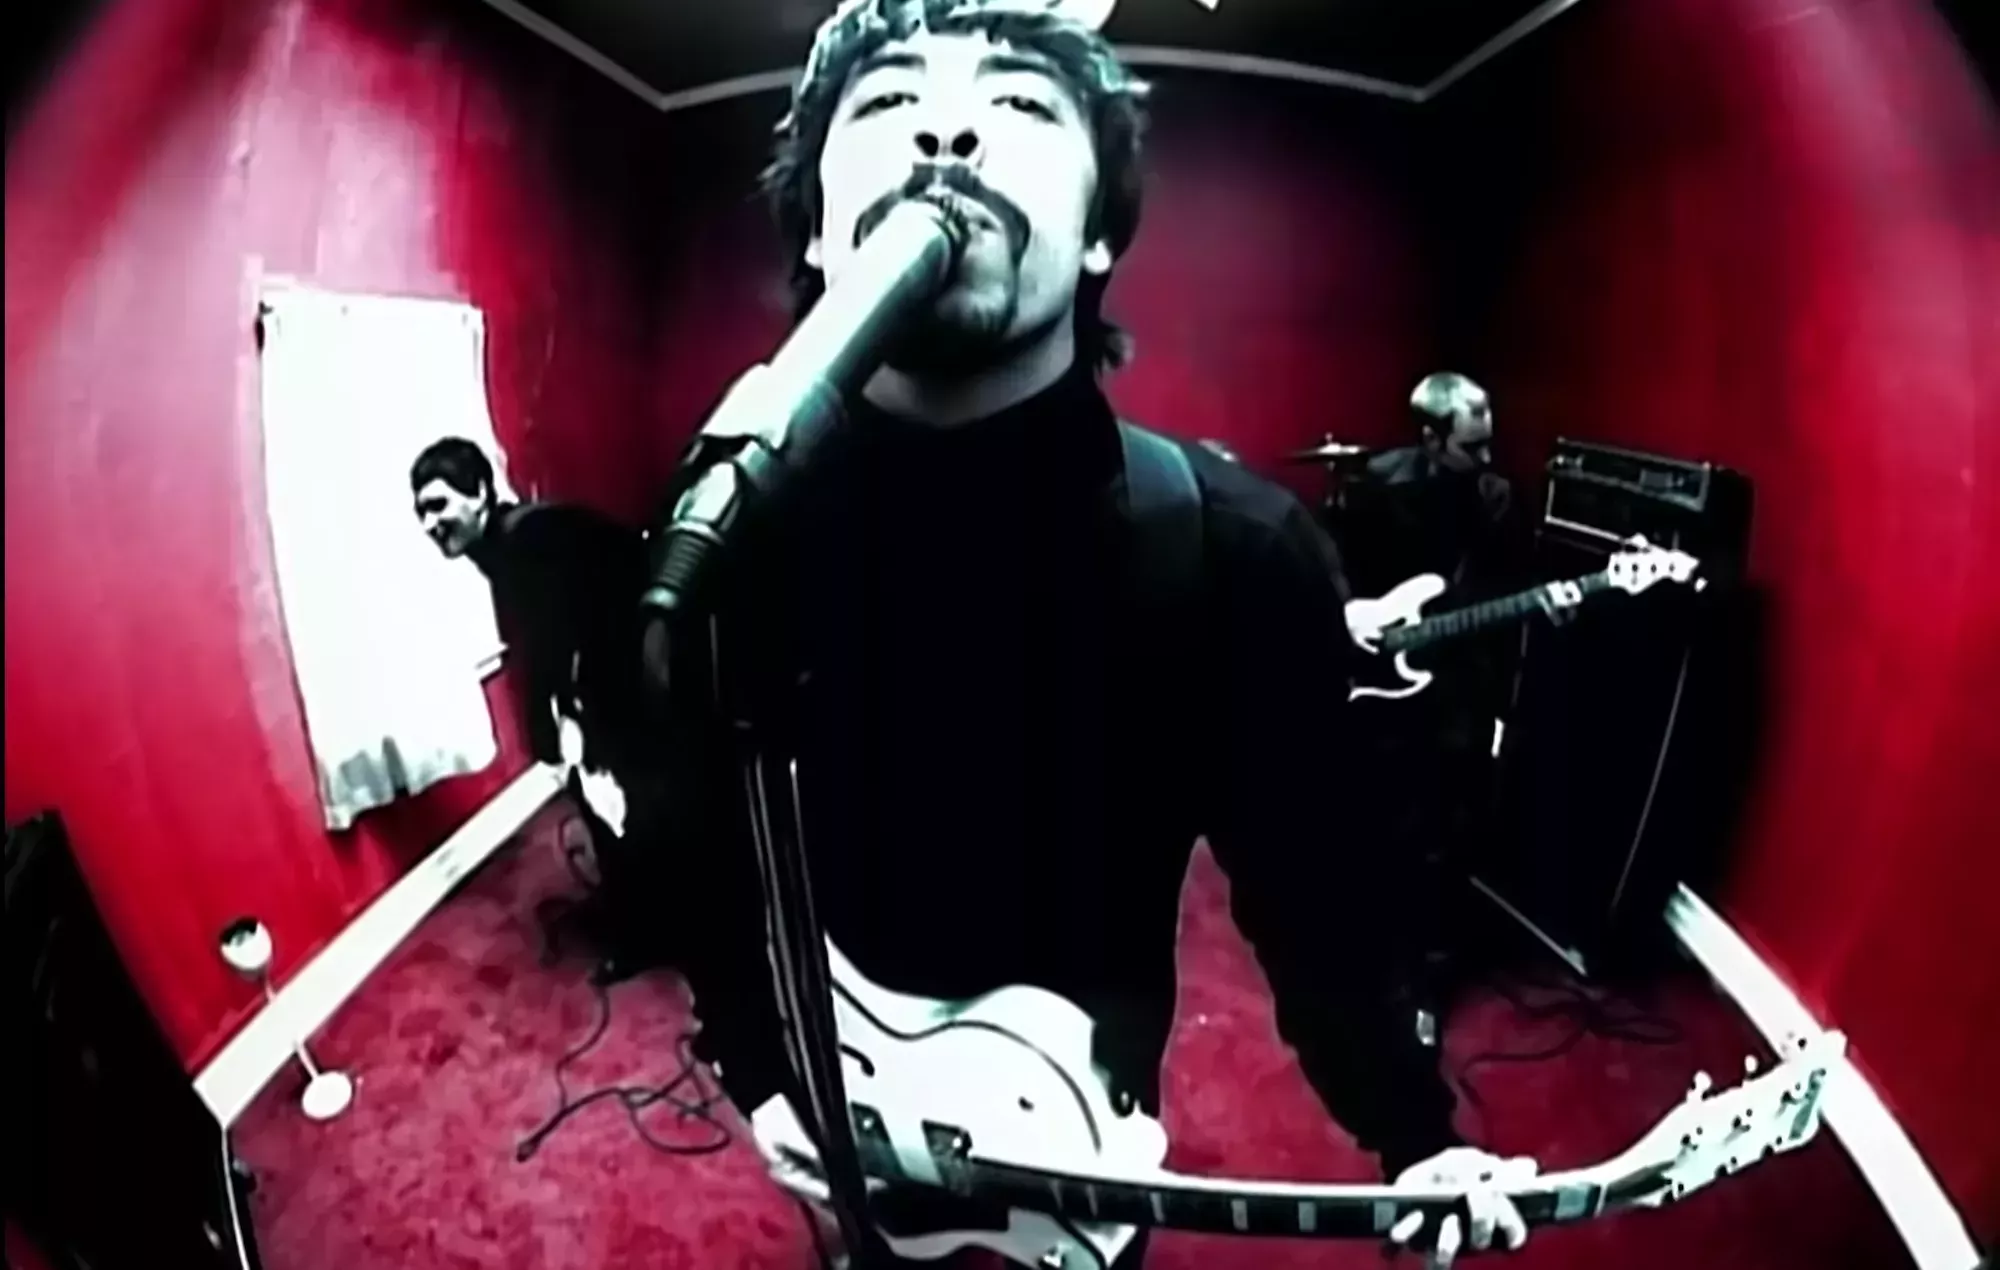 Subastan la guitarra de Dave Grohl del vídeo 'Monkey Wrench' de Foo Fighters